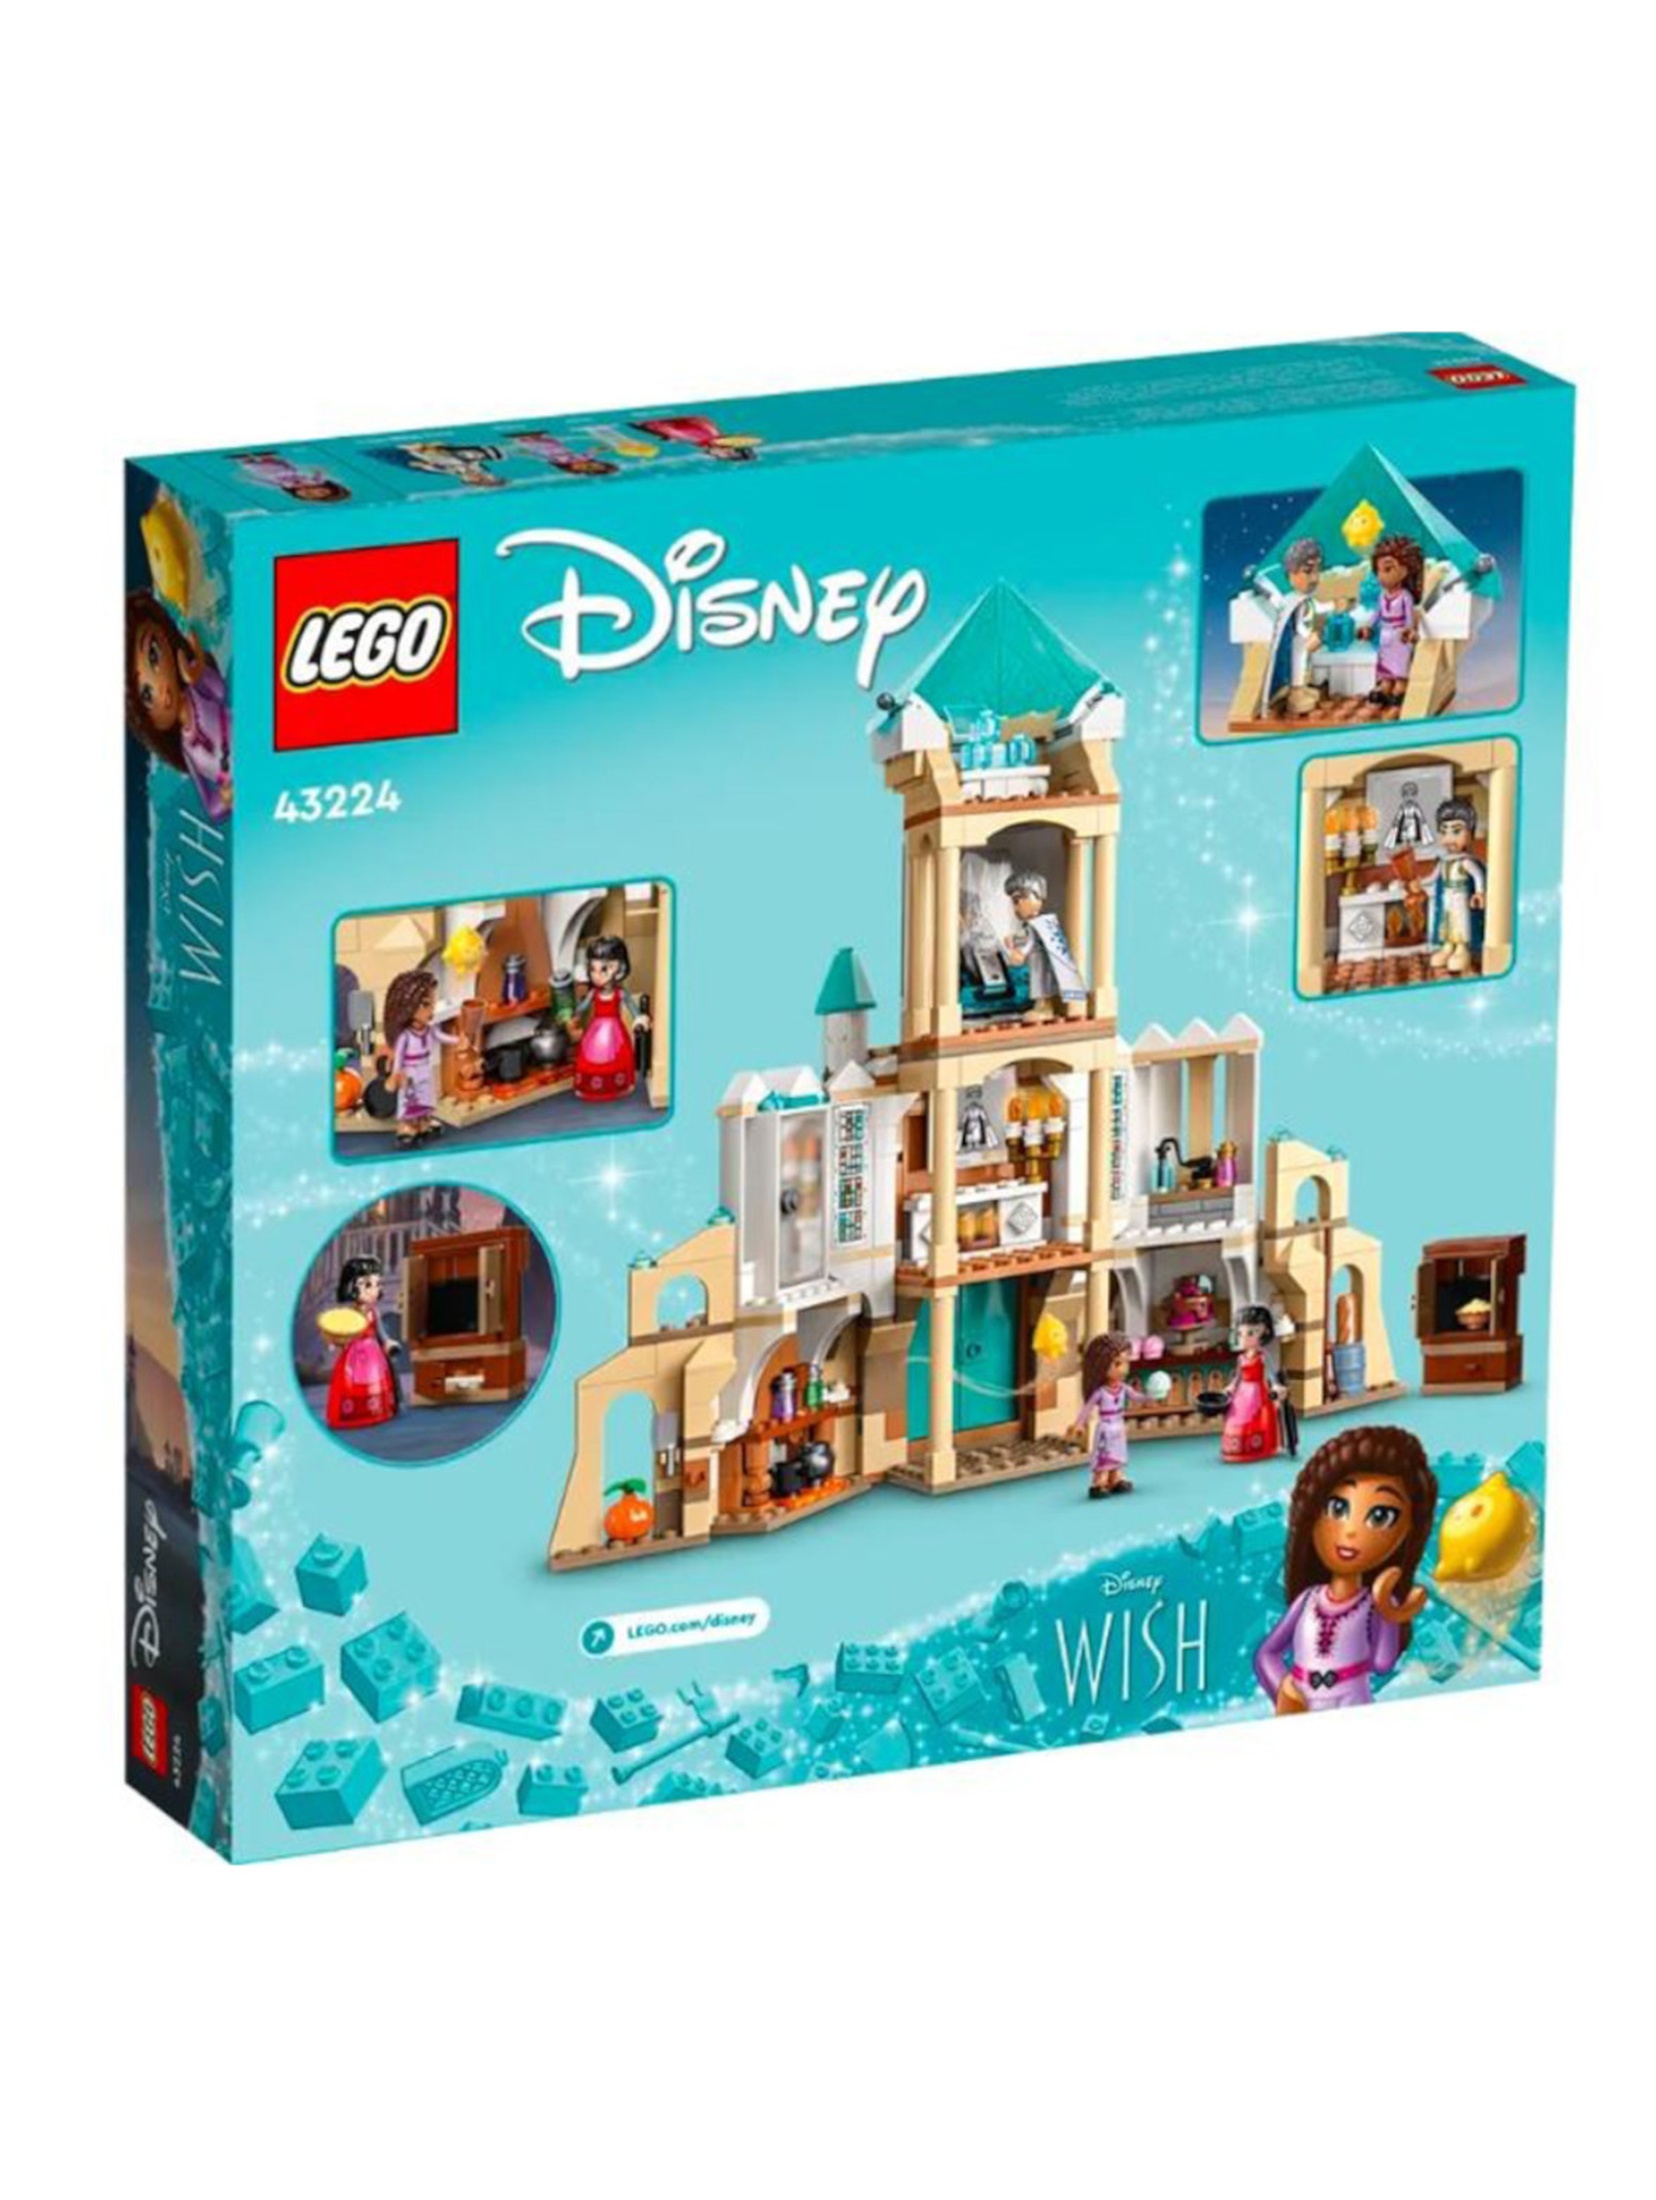 Klocki LEGO Disney Princess 43224 Zamek króla Magnifico - 613 elementów, wiek 7 +